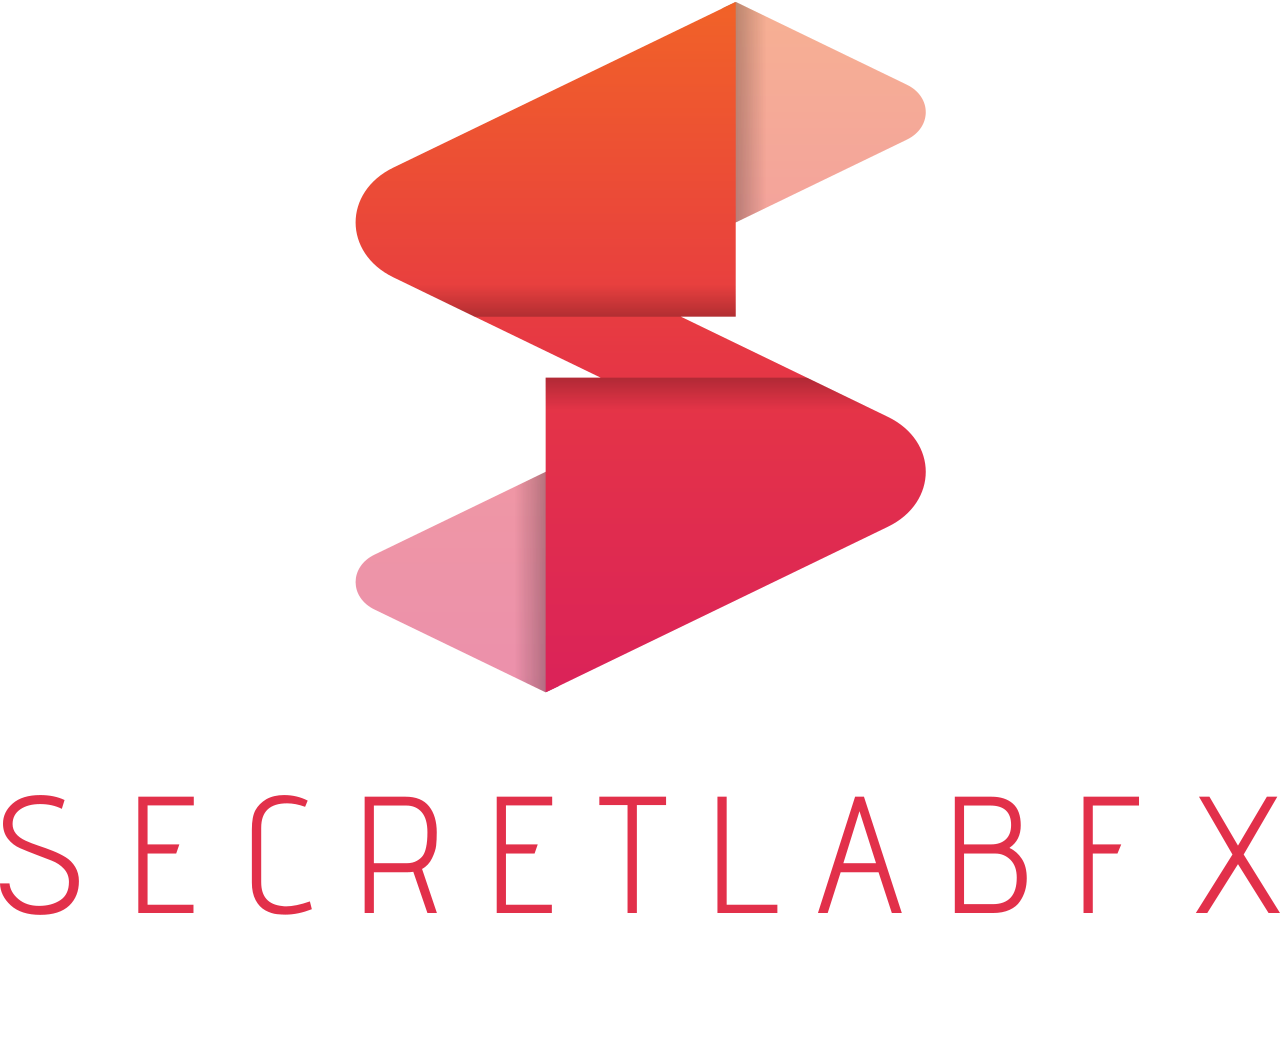 SECRETLABFX's web page